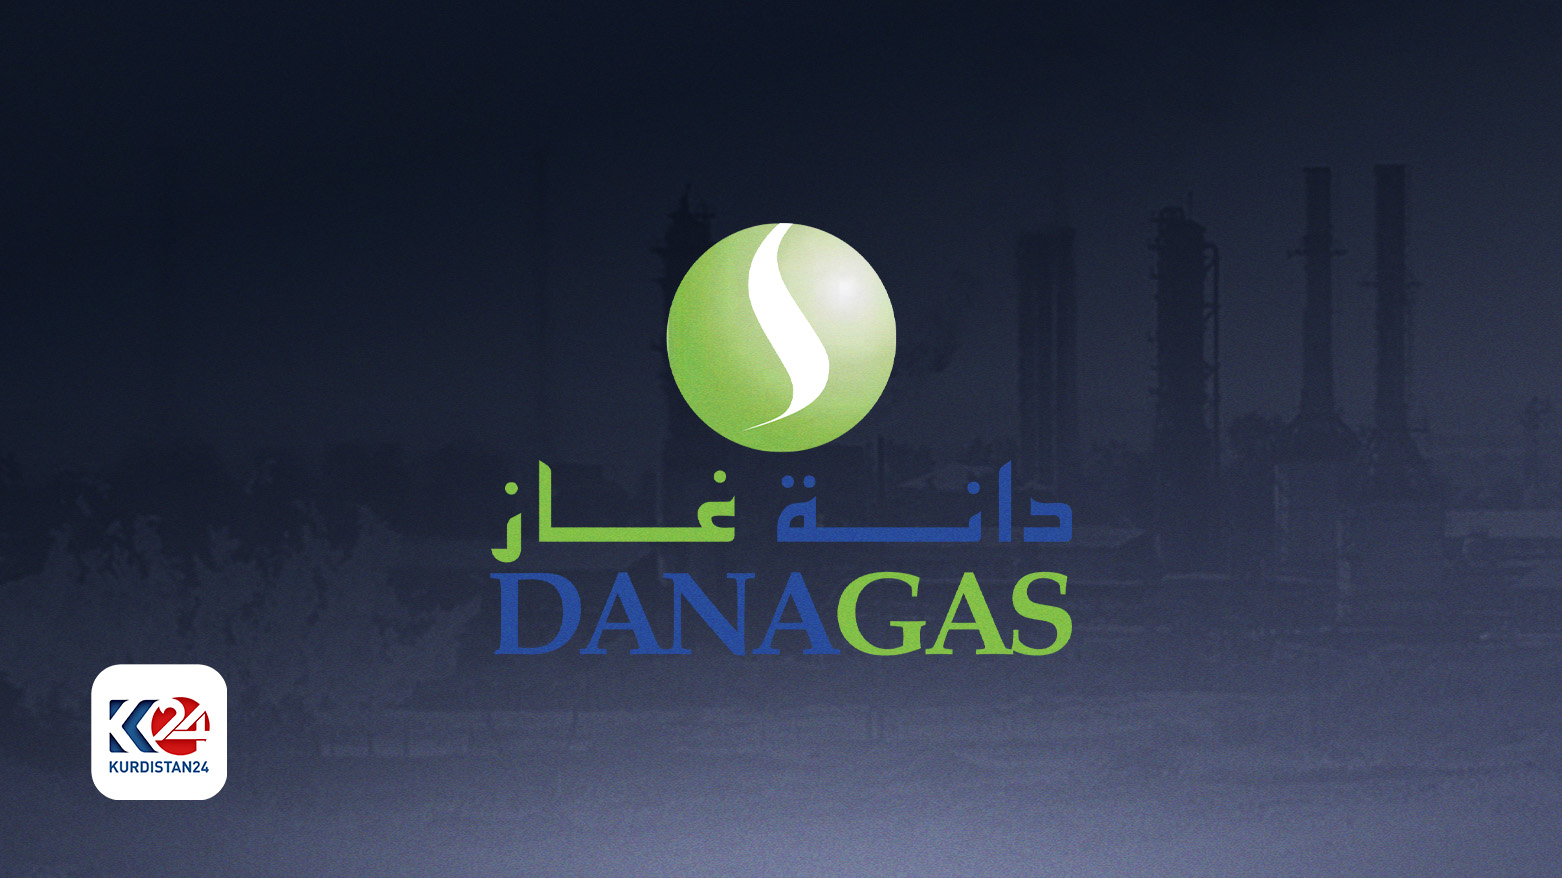 نشان شرکت دانا گاز